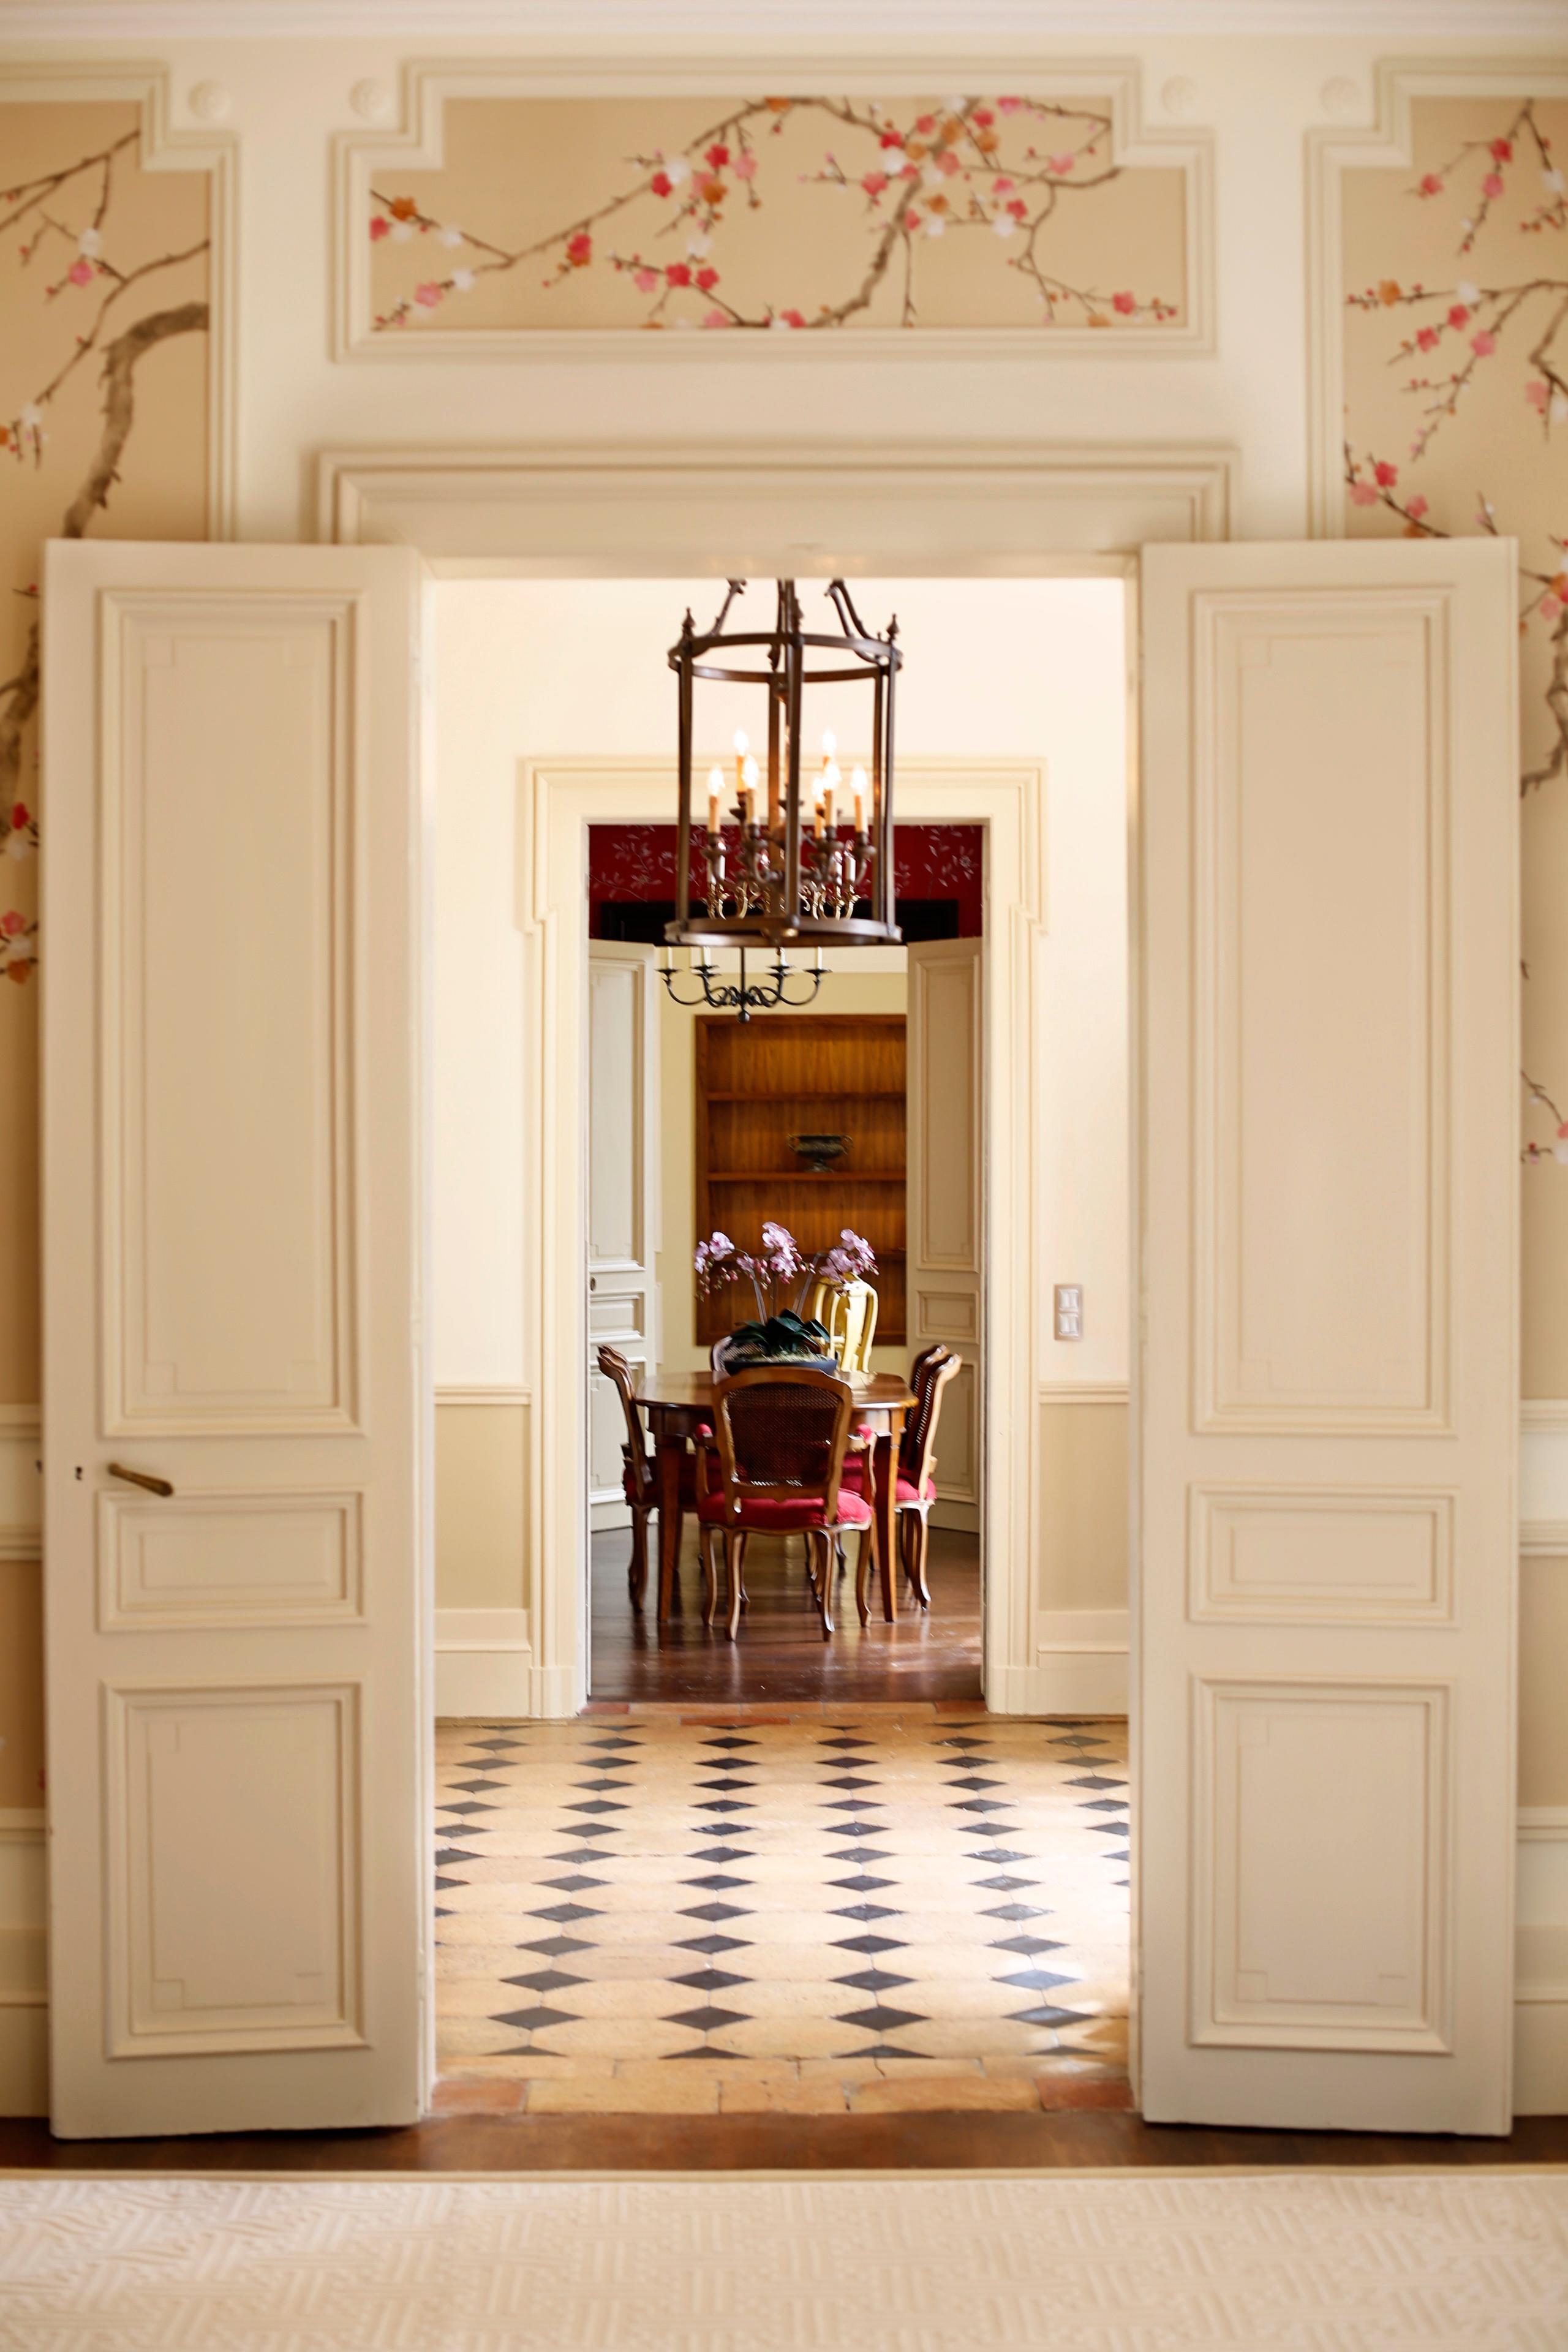 Neagle Esstisch | Sadirac, Frankreich #vintage #landhausstil #luxus #französischerlandhausstil ©Oficina Inglesa